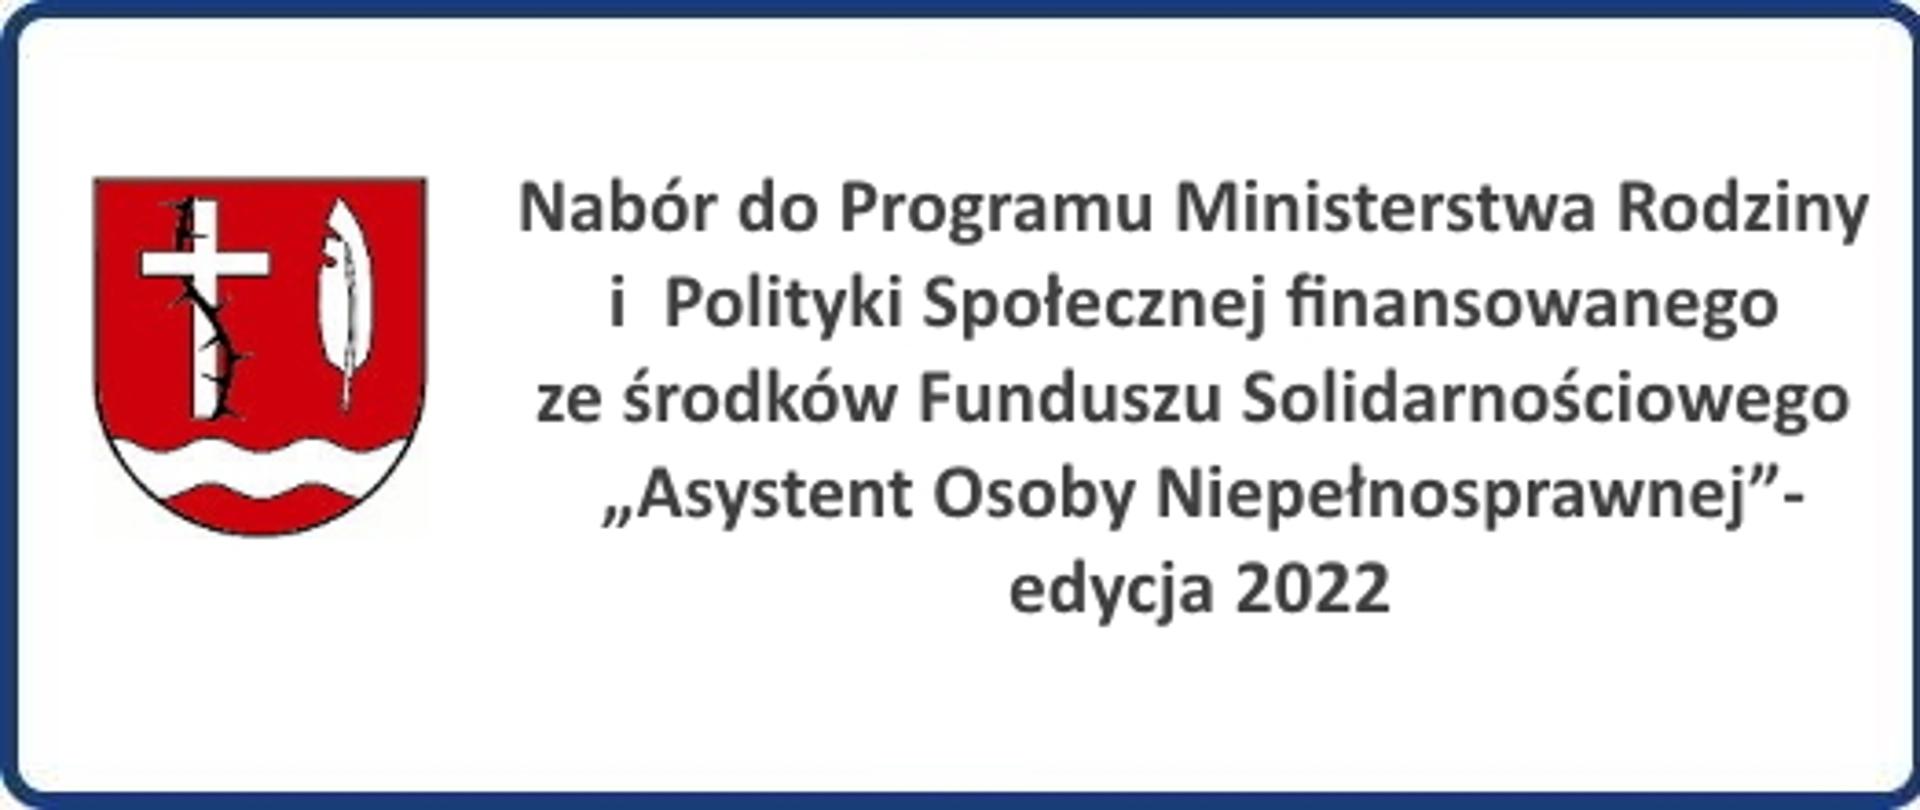 Nabór do Programu Ministerstwa Rodziny i
Polityki Społecznej finansowanego ze środków Funduszu
Solidarnościowego „Asystent Osoby Niepełnosprawnej”-
edycja 2022